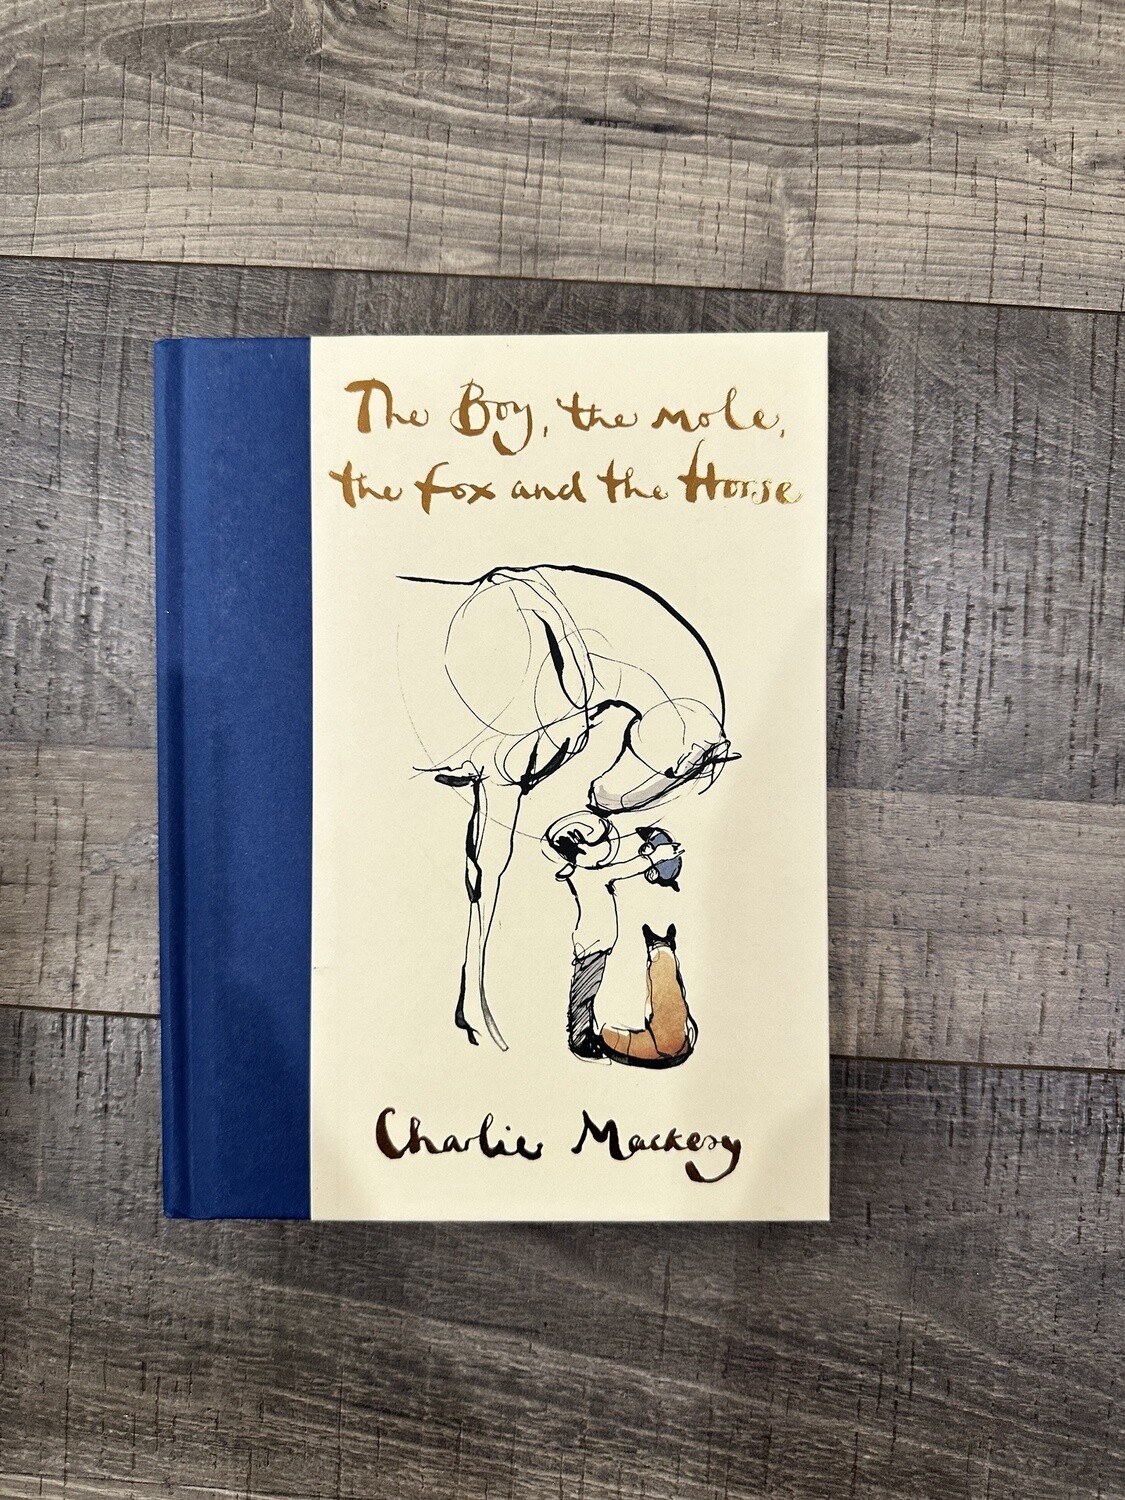 Mackesy, Charlie-The Boy, the Mole, the Fox and the House